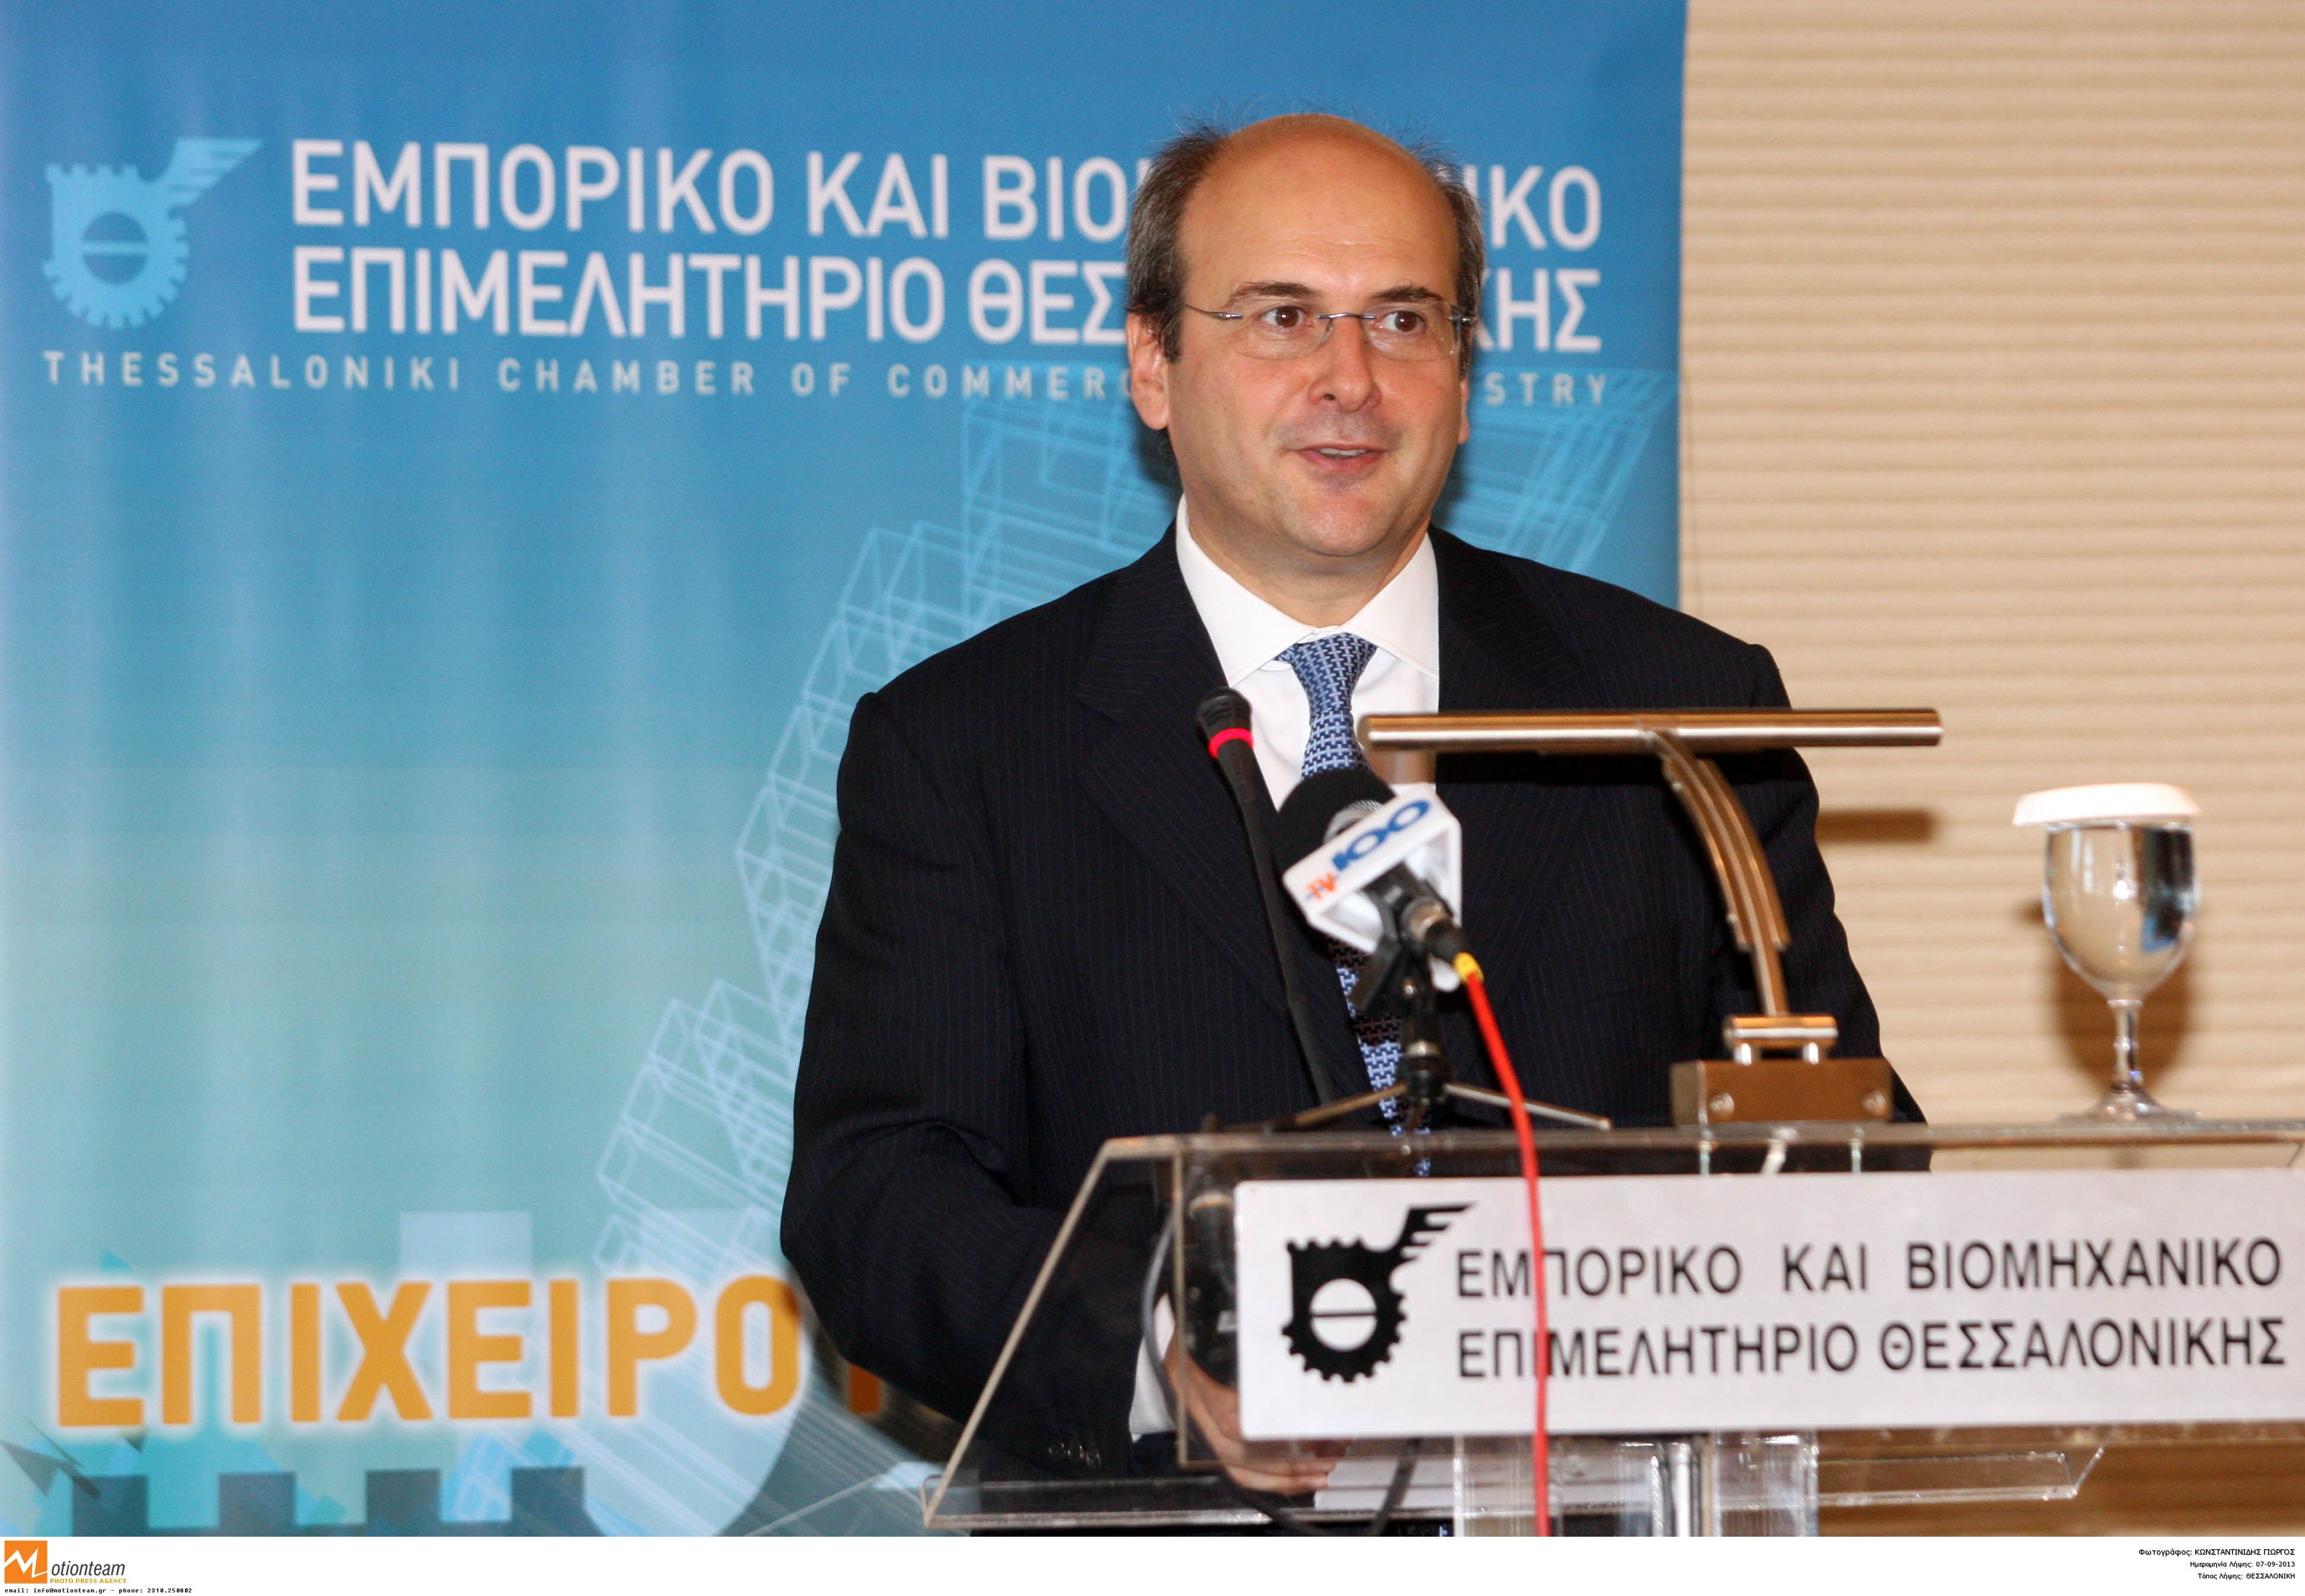 ΦΩΤΟ EUROKINISSI - Ο Κ. Χατζηδάκης σε ομιλία στη Γενική Συνέλευση της Κεντρικής Ένωσης Επιμελητηρίων Ελλάδος